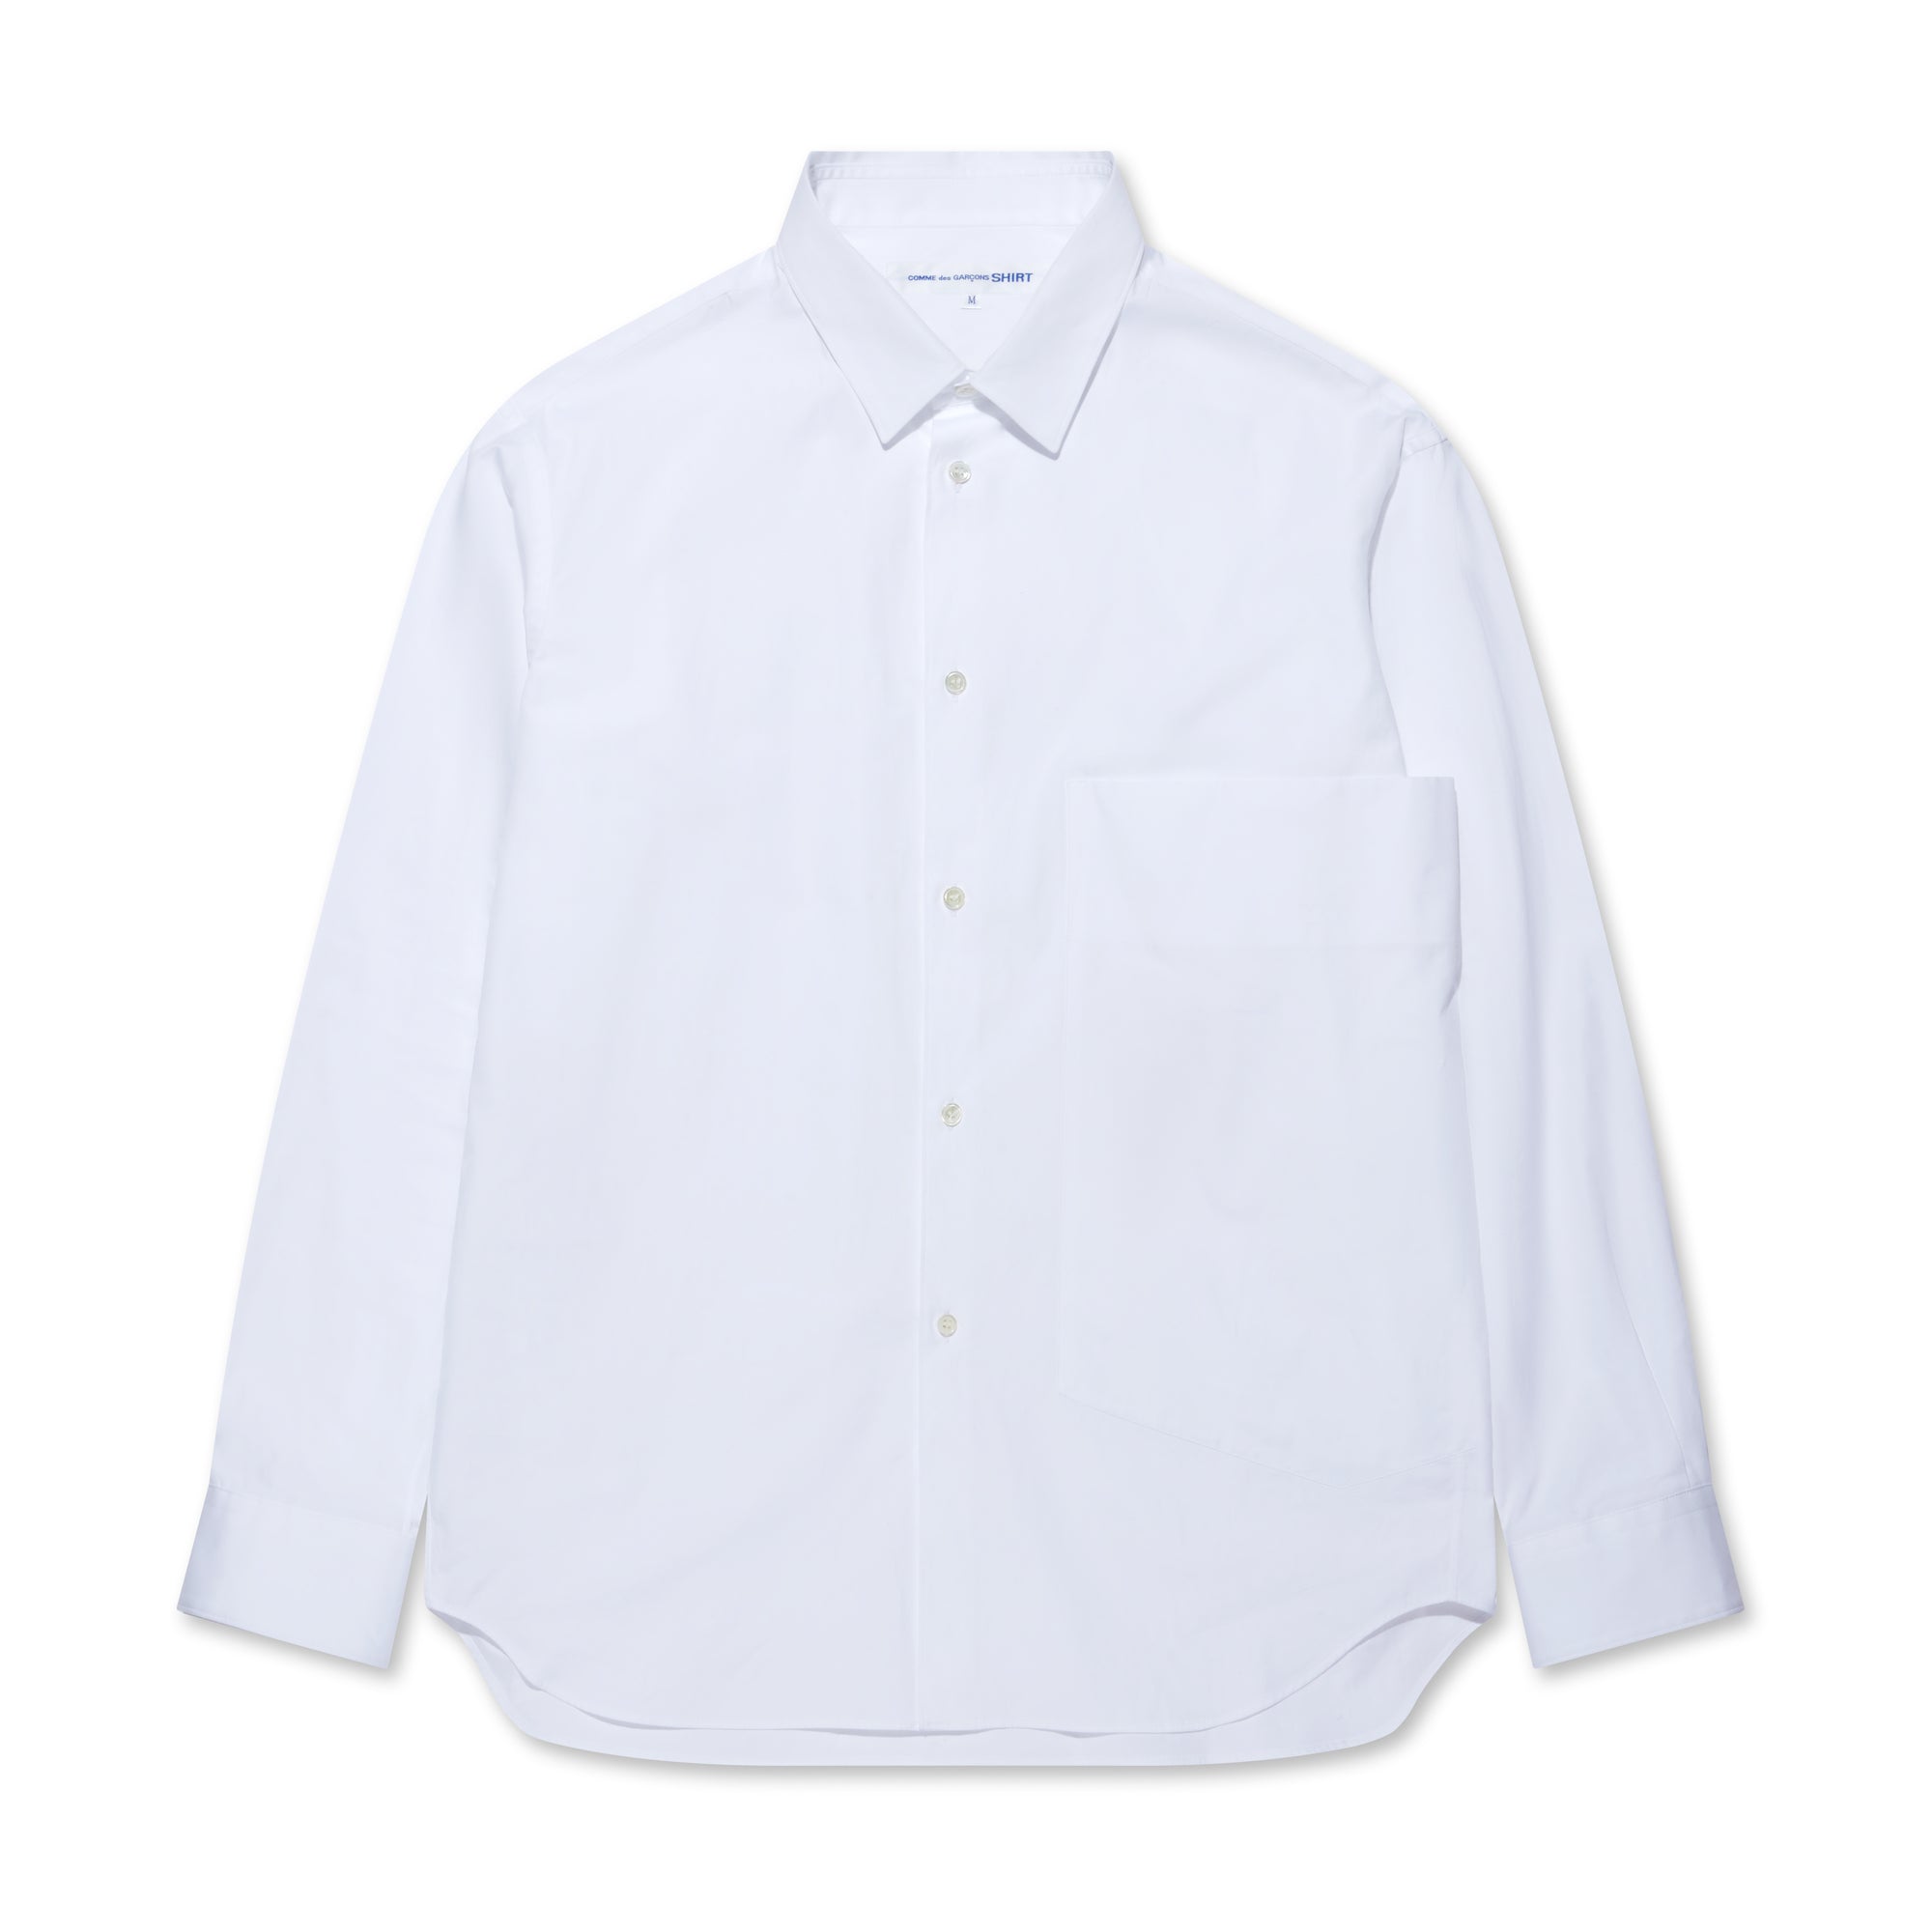 CDG Shirt - Men's Oversized Pocket Shirt - (White) view 5